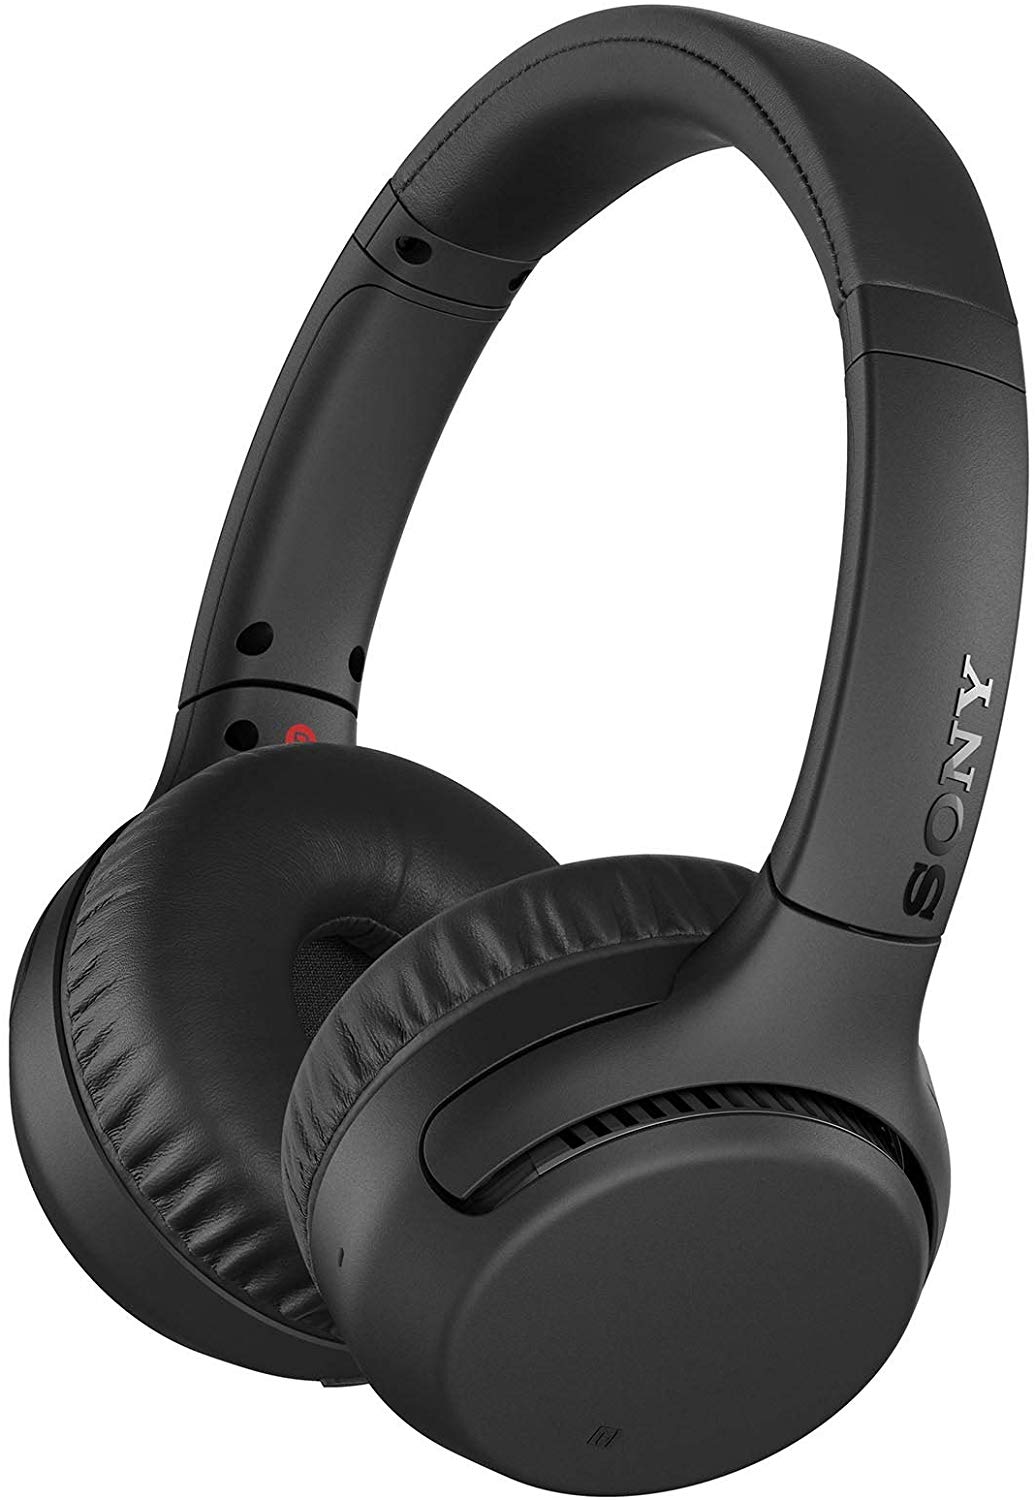 Headphone WH-XB700 sem fio Bluetooth com Extra Bass Sony, com Alexa Integrada